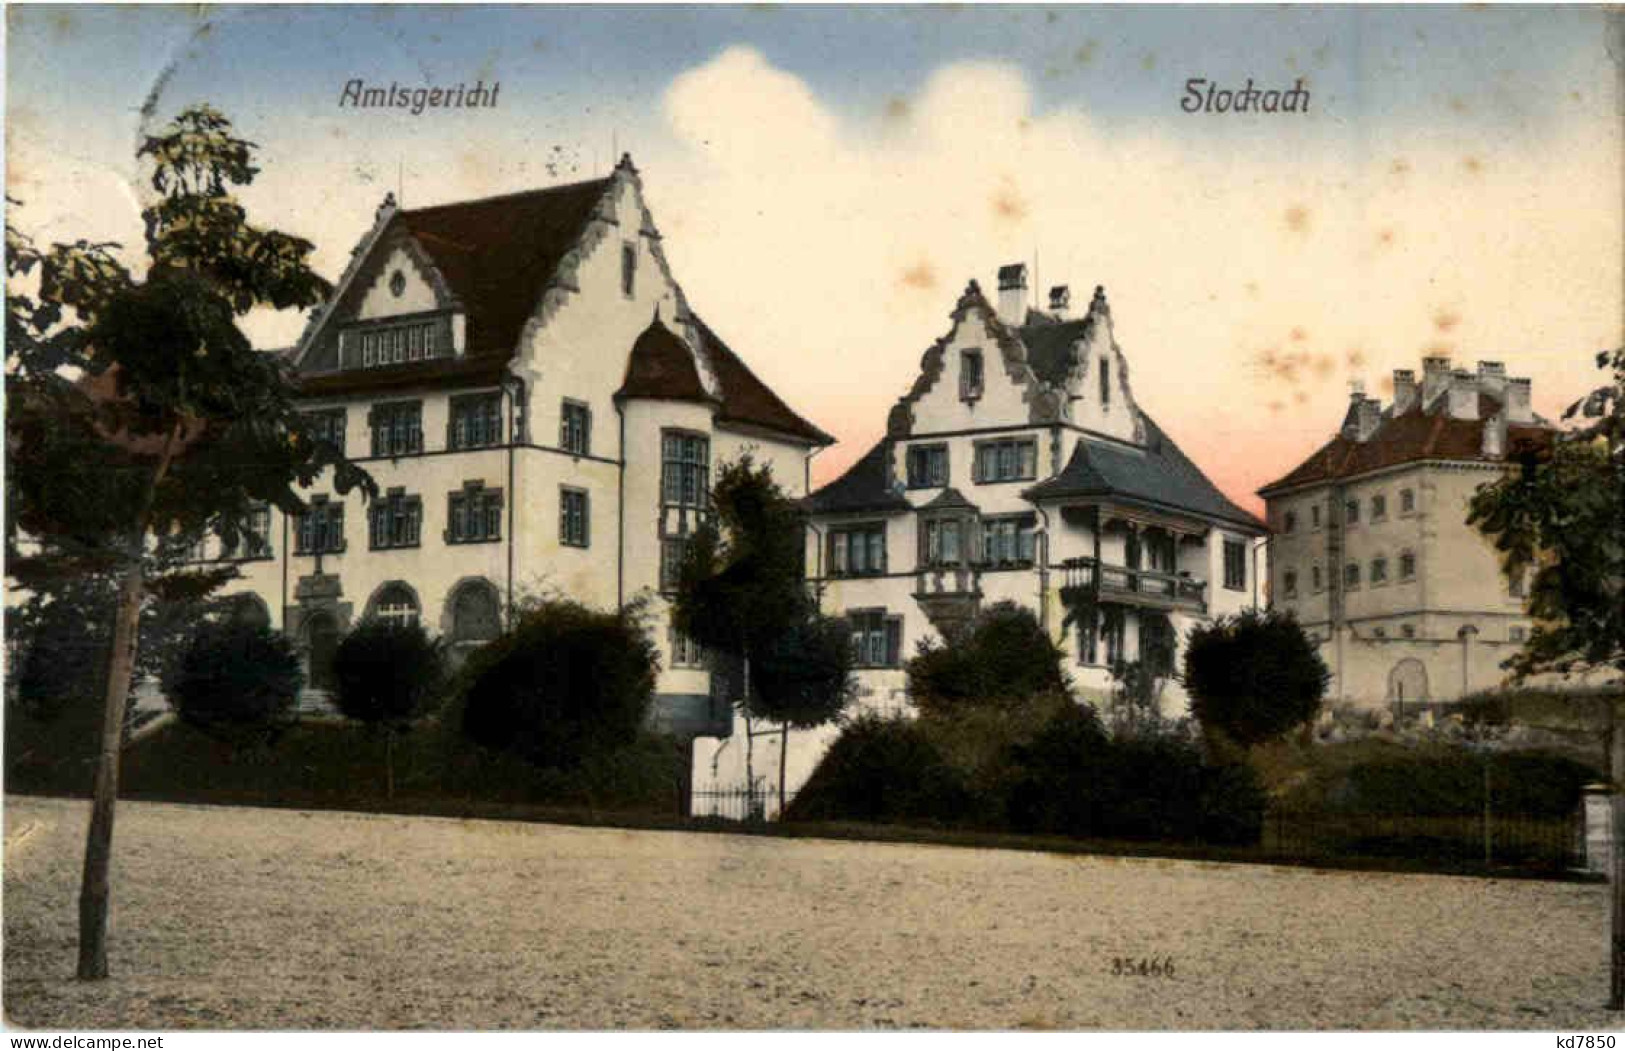 Stockach - Amtsgericht - Konstanz